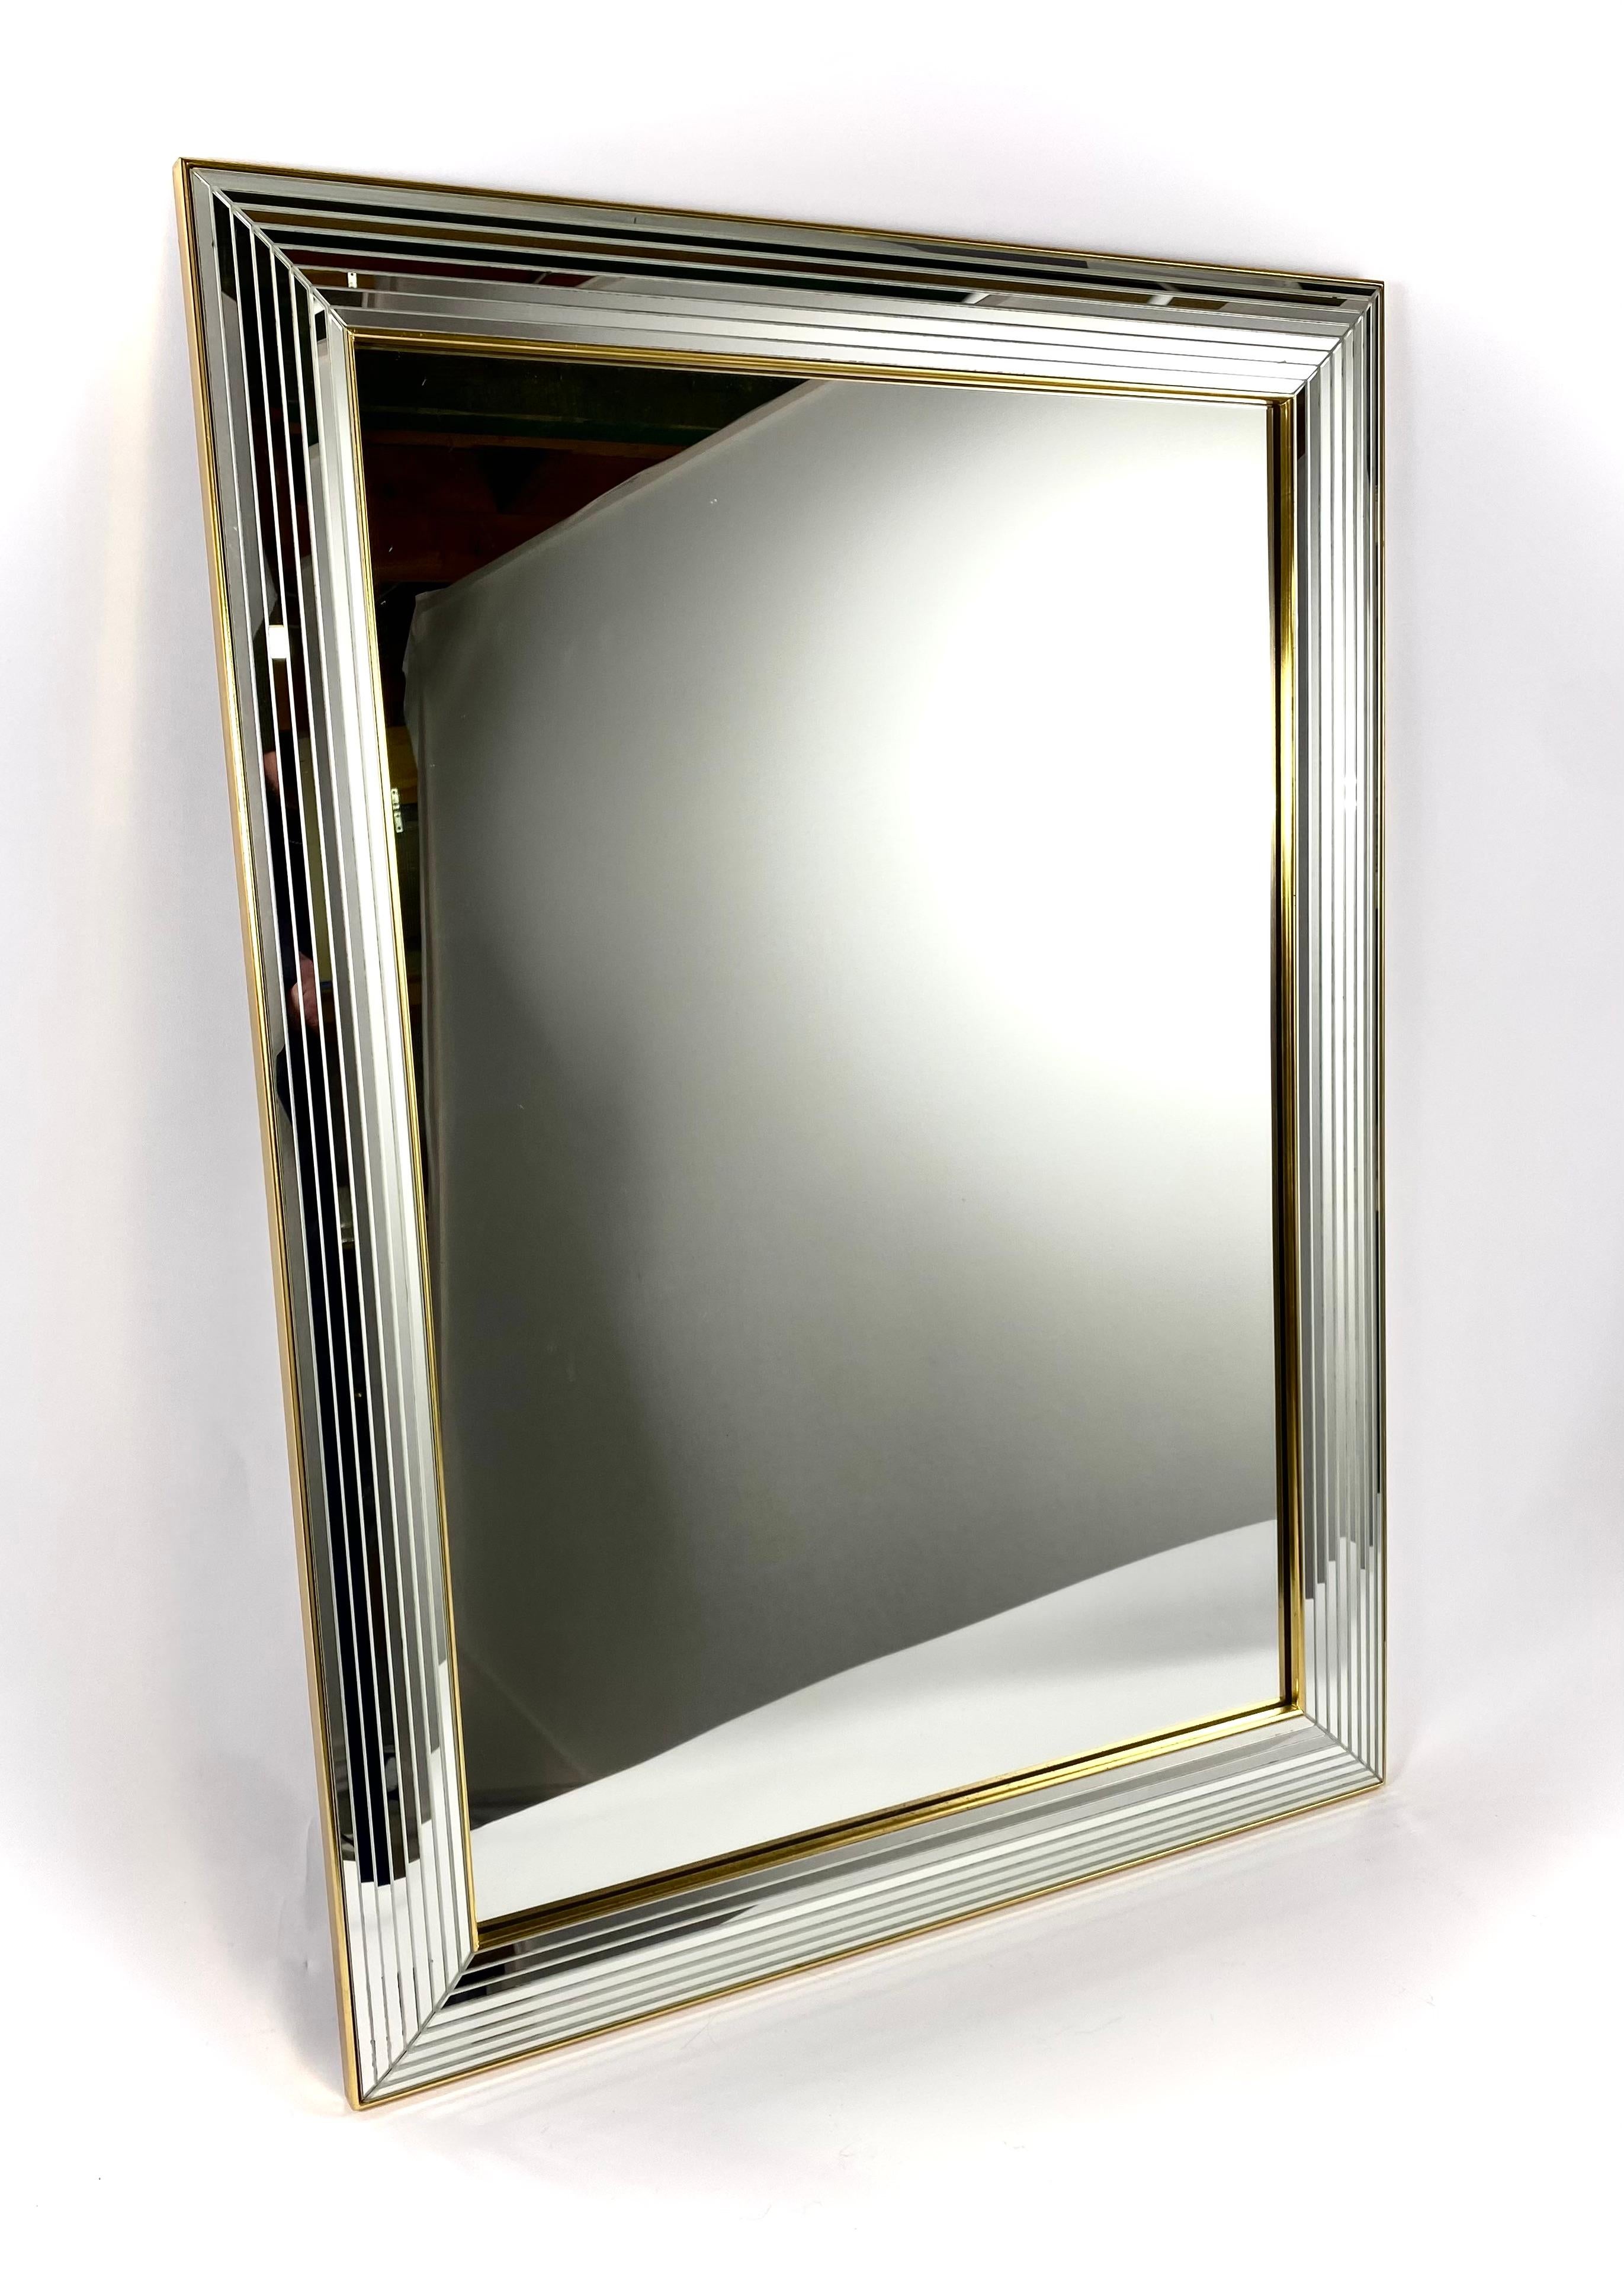 Miroir Vintage par le producteur belge Deknudt des années 1980 dans le style Hollywood Regency.

Magnifique miroir avec un cadre en verre avec une bande dorée. Le cadre est composé de petits miroirs à facettes sur toute la largeur et se termine par